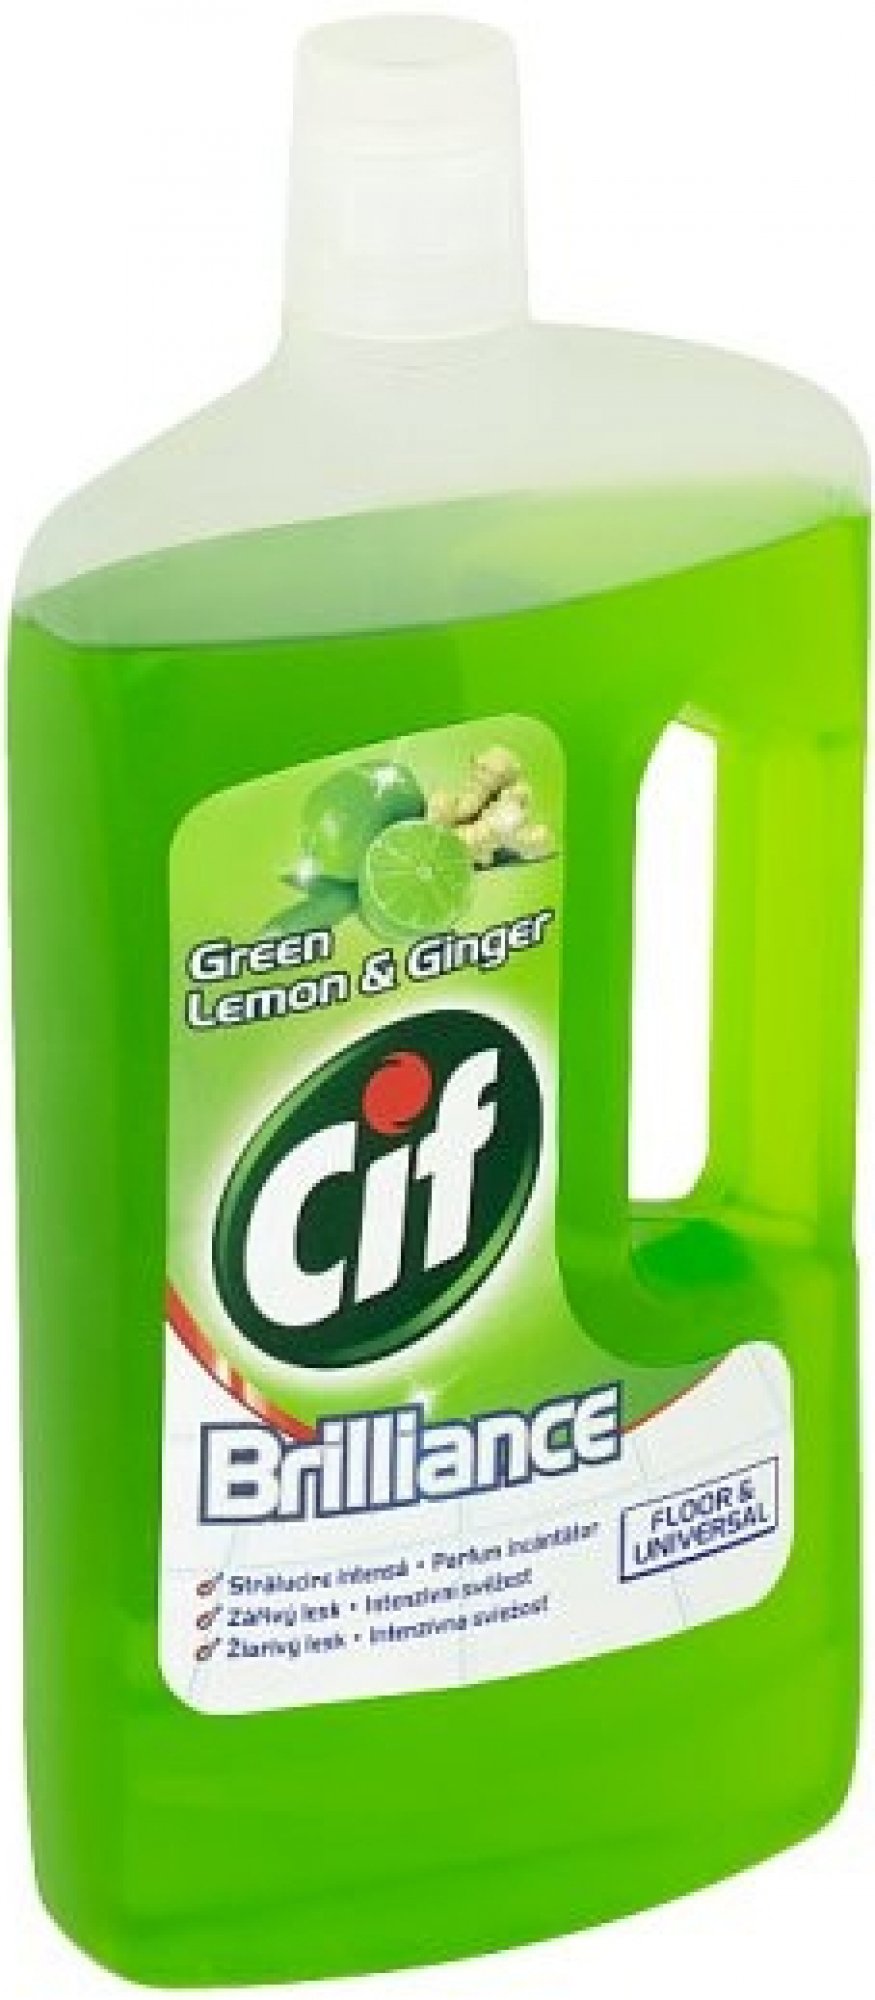 Cif Brilliance univerzální na podlahy Green Lemon & Ginger 1 l